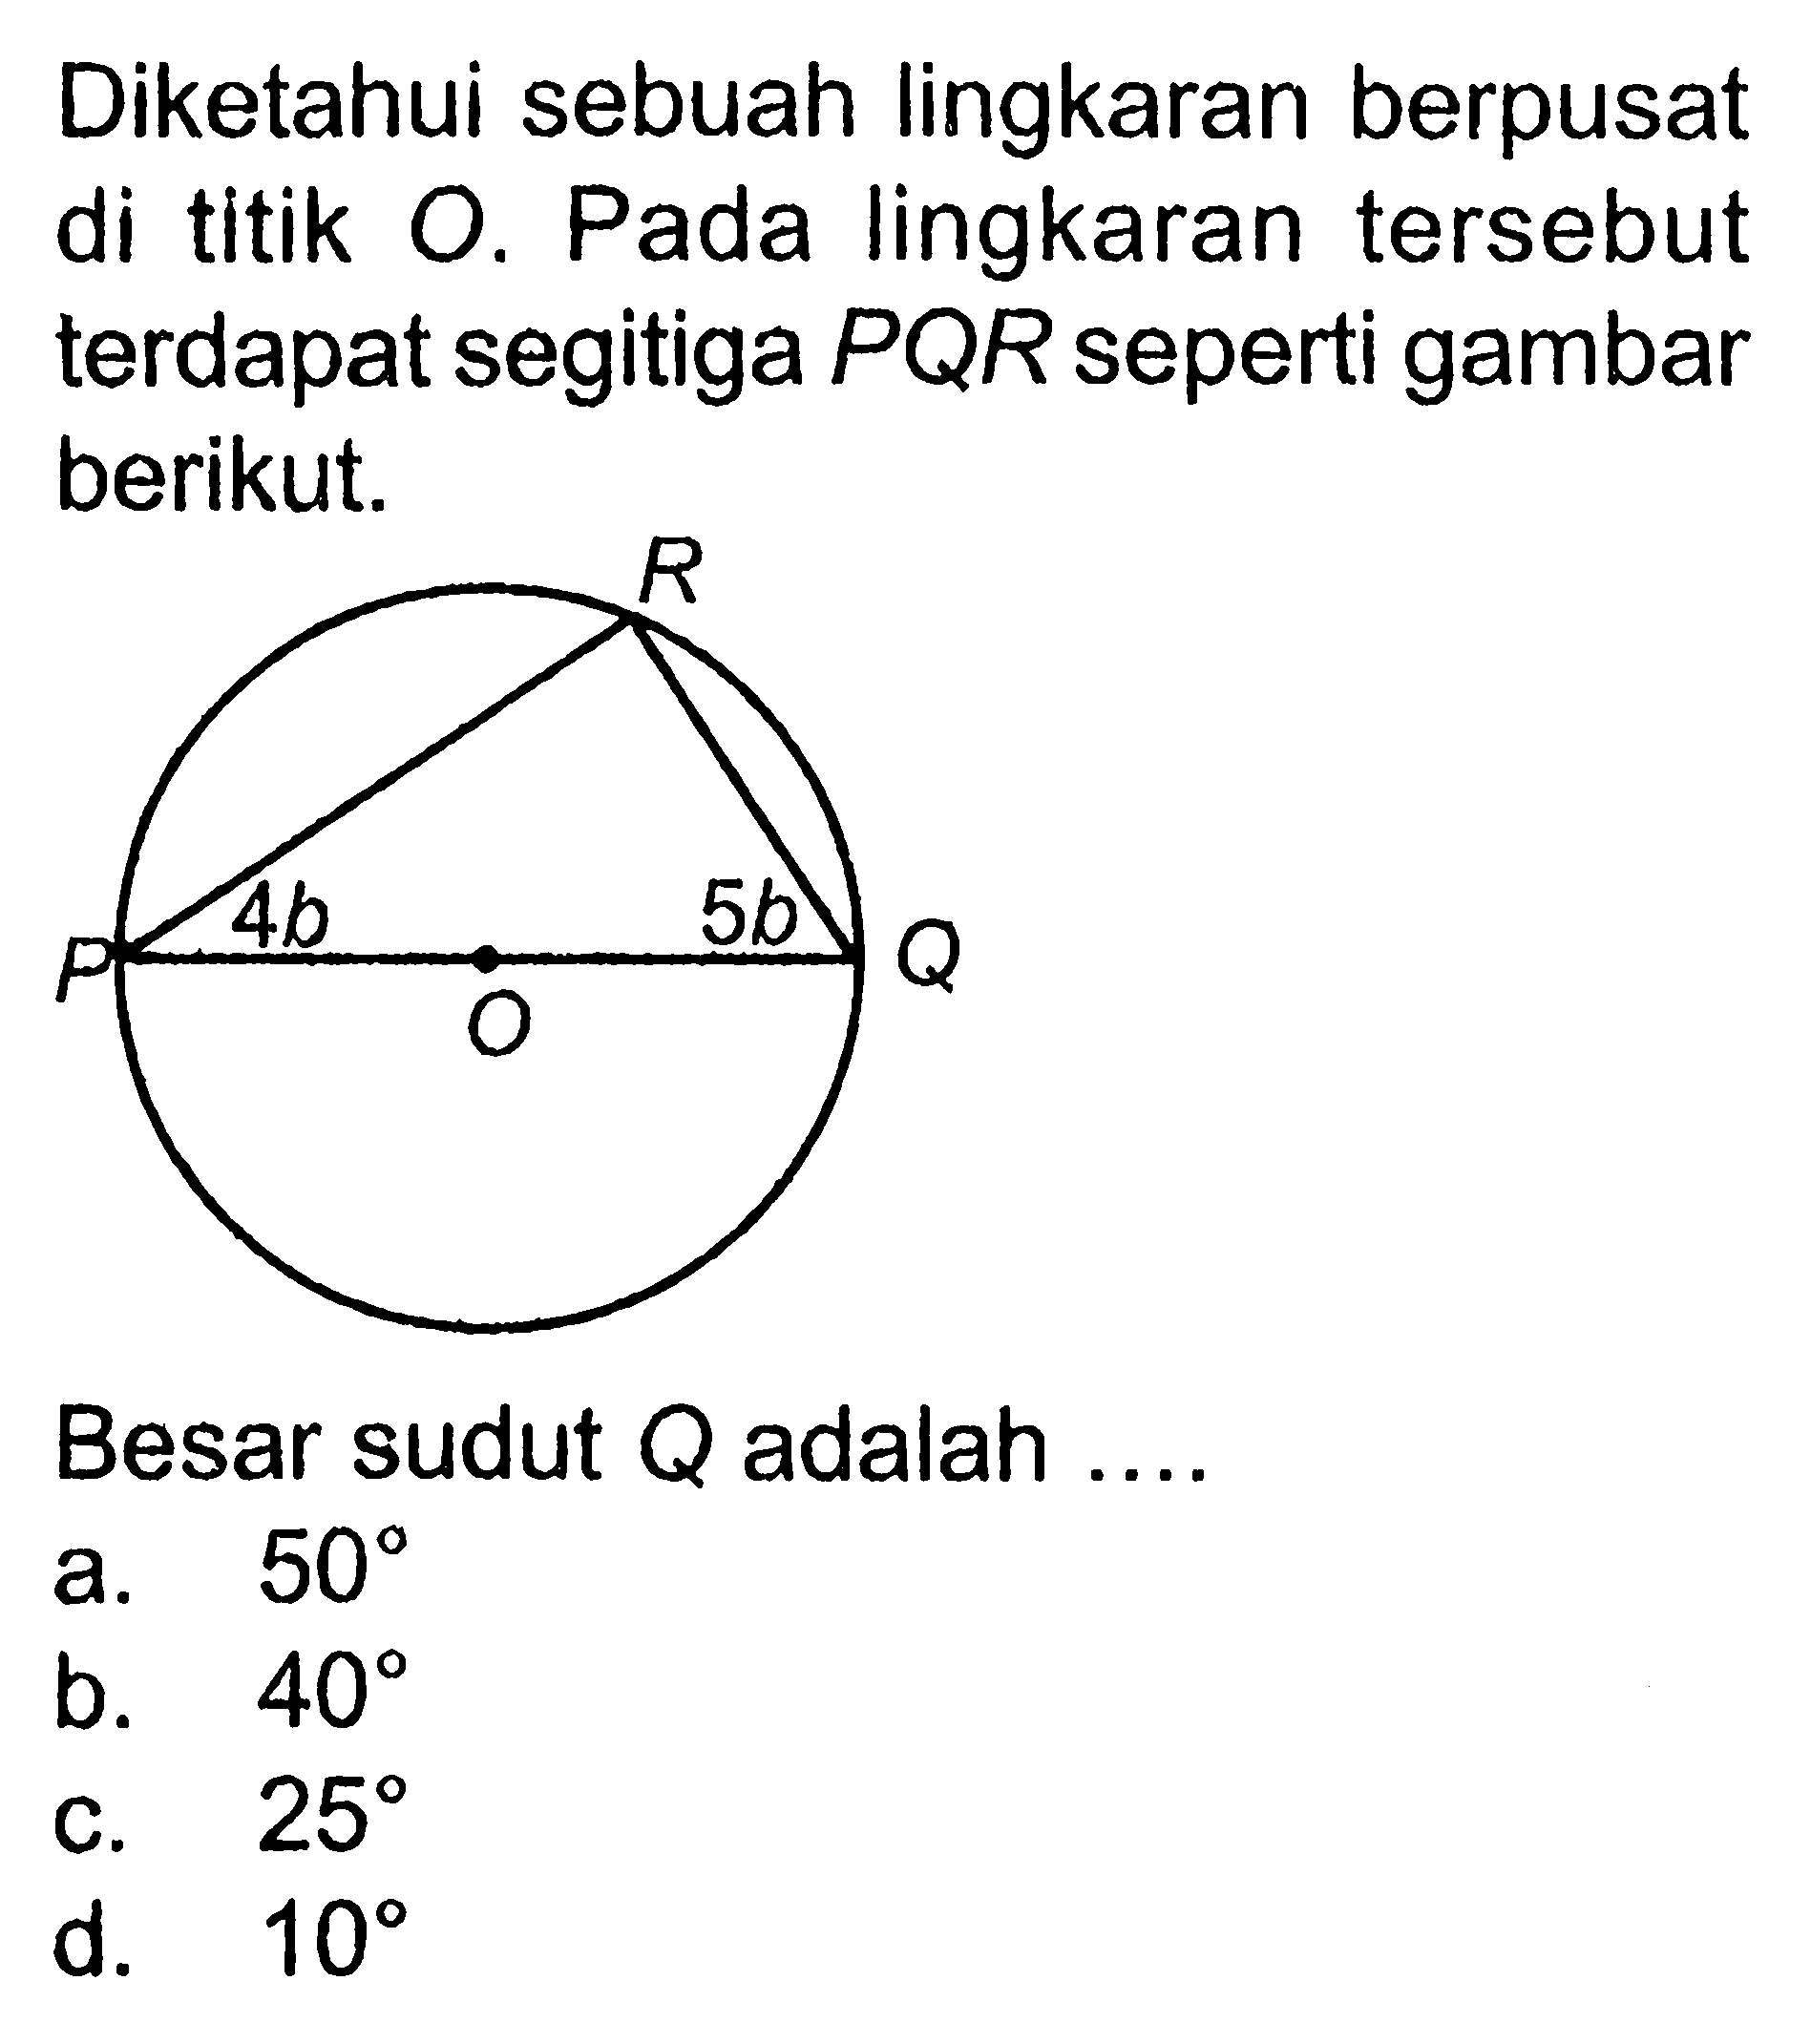 Diketahui sebuah lingkaran berpusat di titik O. Pada lingkaran tersebut terdapat segitiga PQR seperti gambar berikut.Besar sudut Q adalah ....